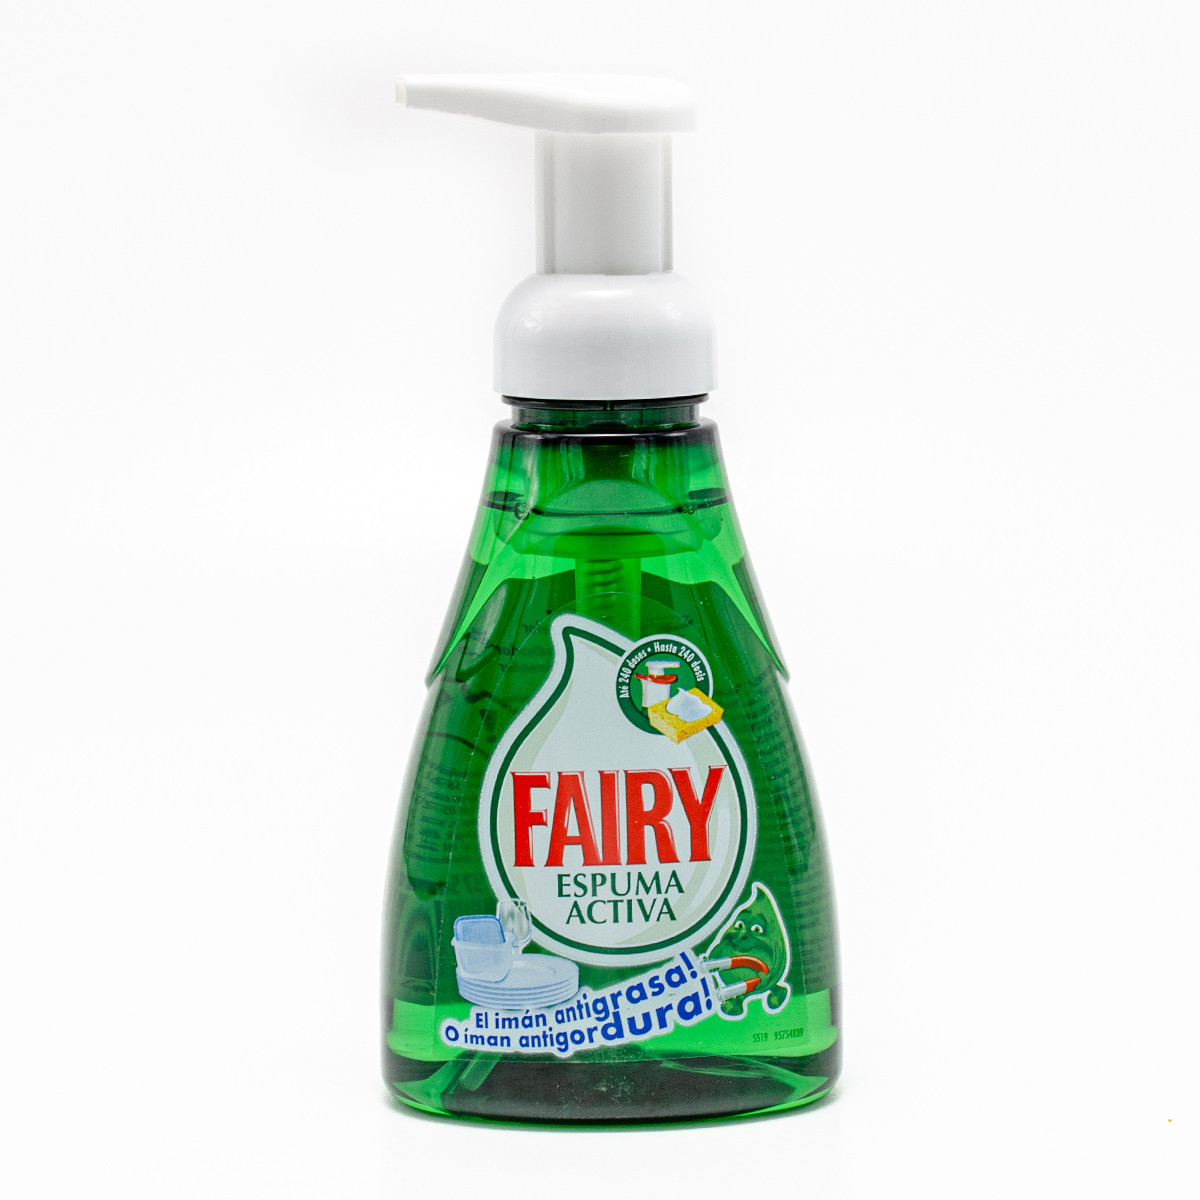 Активная пена для мытья посуды fairy espuma activa с дозаторо - 64 грн,  купить на ИЗИ (11844079)